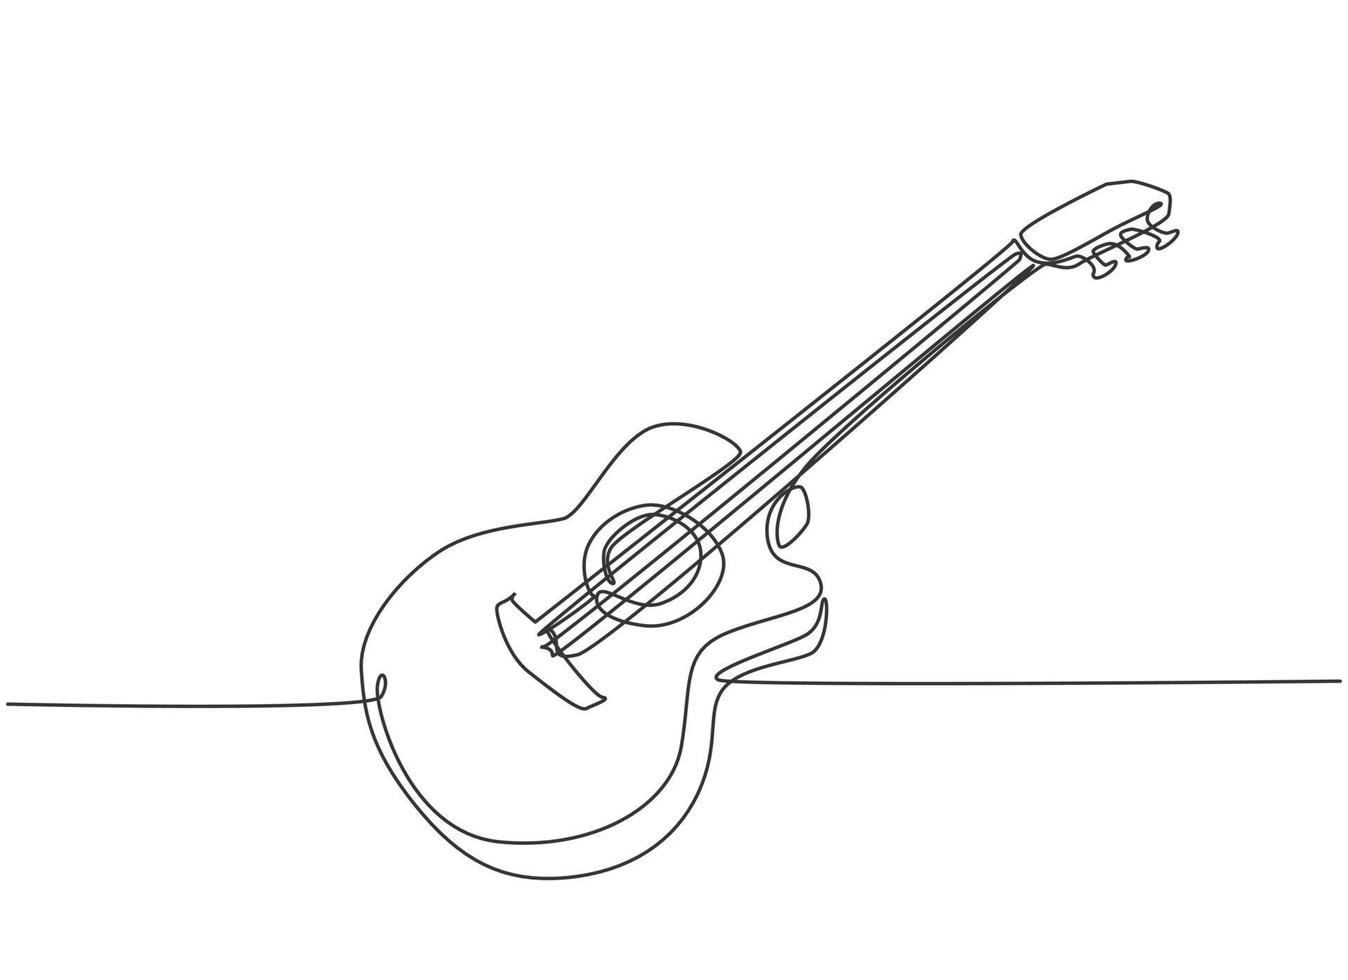 Eine einzige Strichzeichnung der klassischen Akustikgitarre aus Holz. moderne Saitenmusikinstrumente Konzept kontinuierliche Linie zeichnen Design Vektor-Illustration Grafik vektor